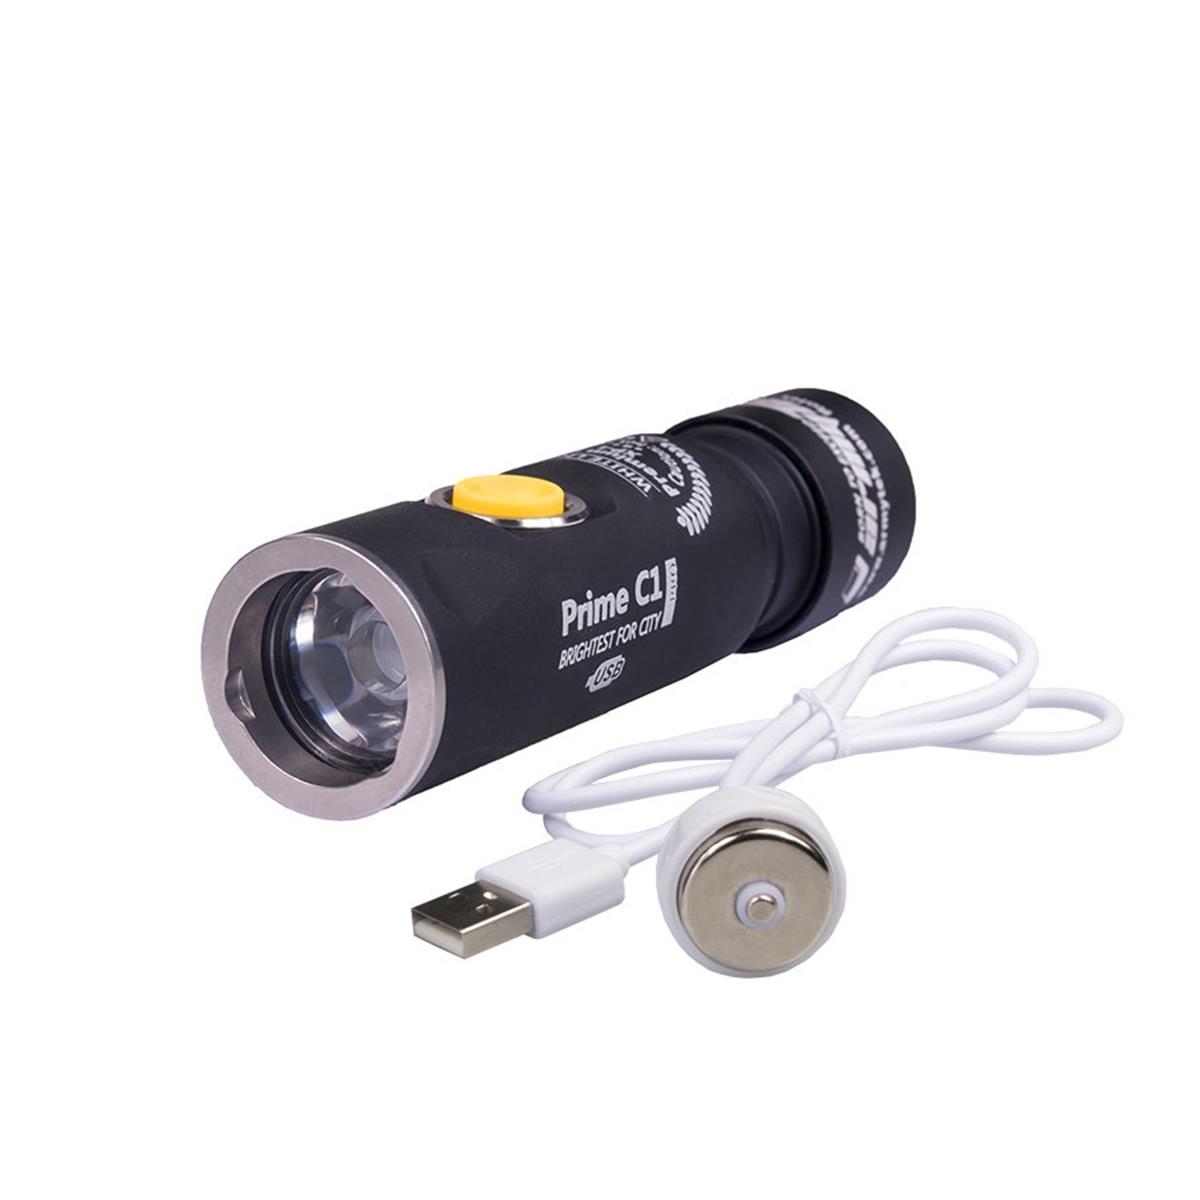 Фонарь Armytek Prime C1 Pro Magnet USB XP-L Теплый свет фонарь велосипедный передний 1 светодиод 5 режимов